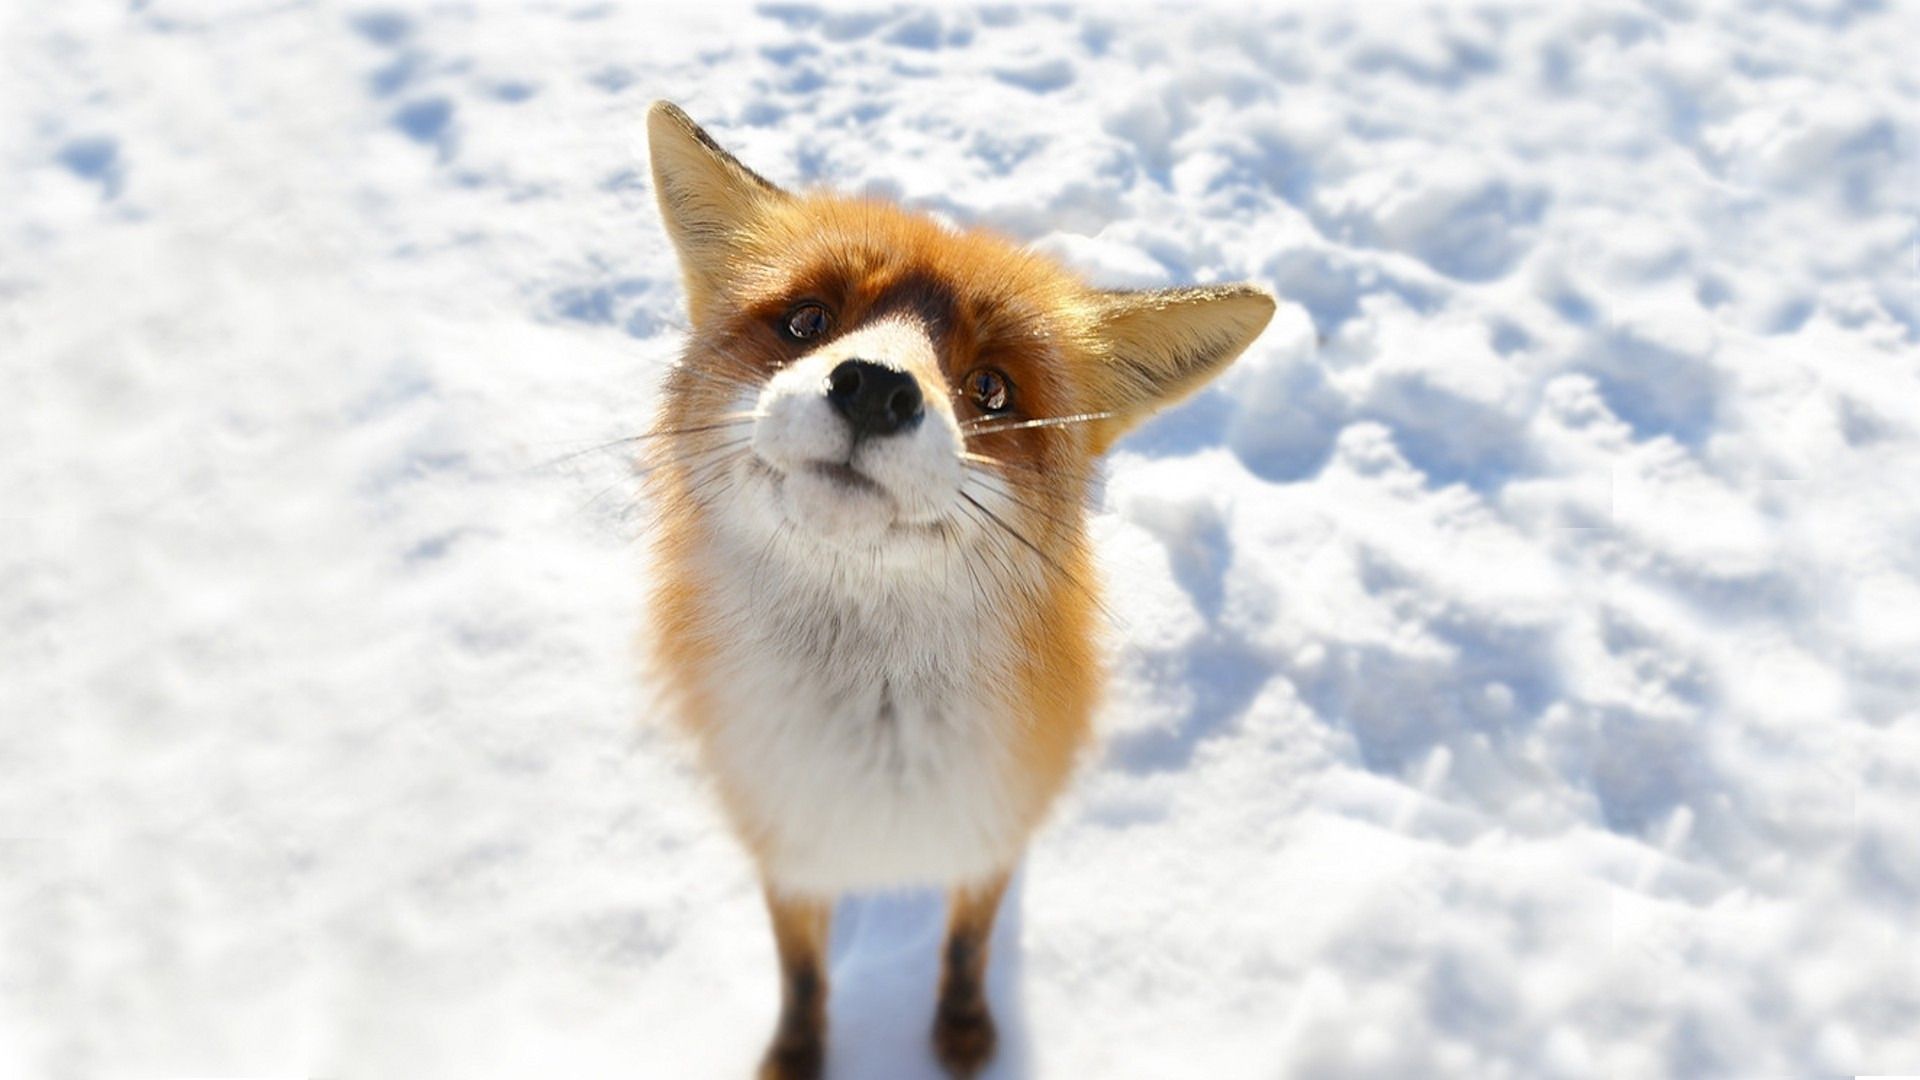 Як живе лисичка в зимовий час в лісі?. Лисиця - хороший мисливець. Крім спостережливості та кмітливості, у неї чудова зорова пам'ять, гарний нюх і гострий слух.